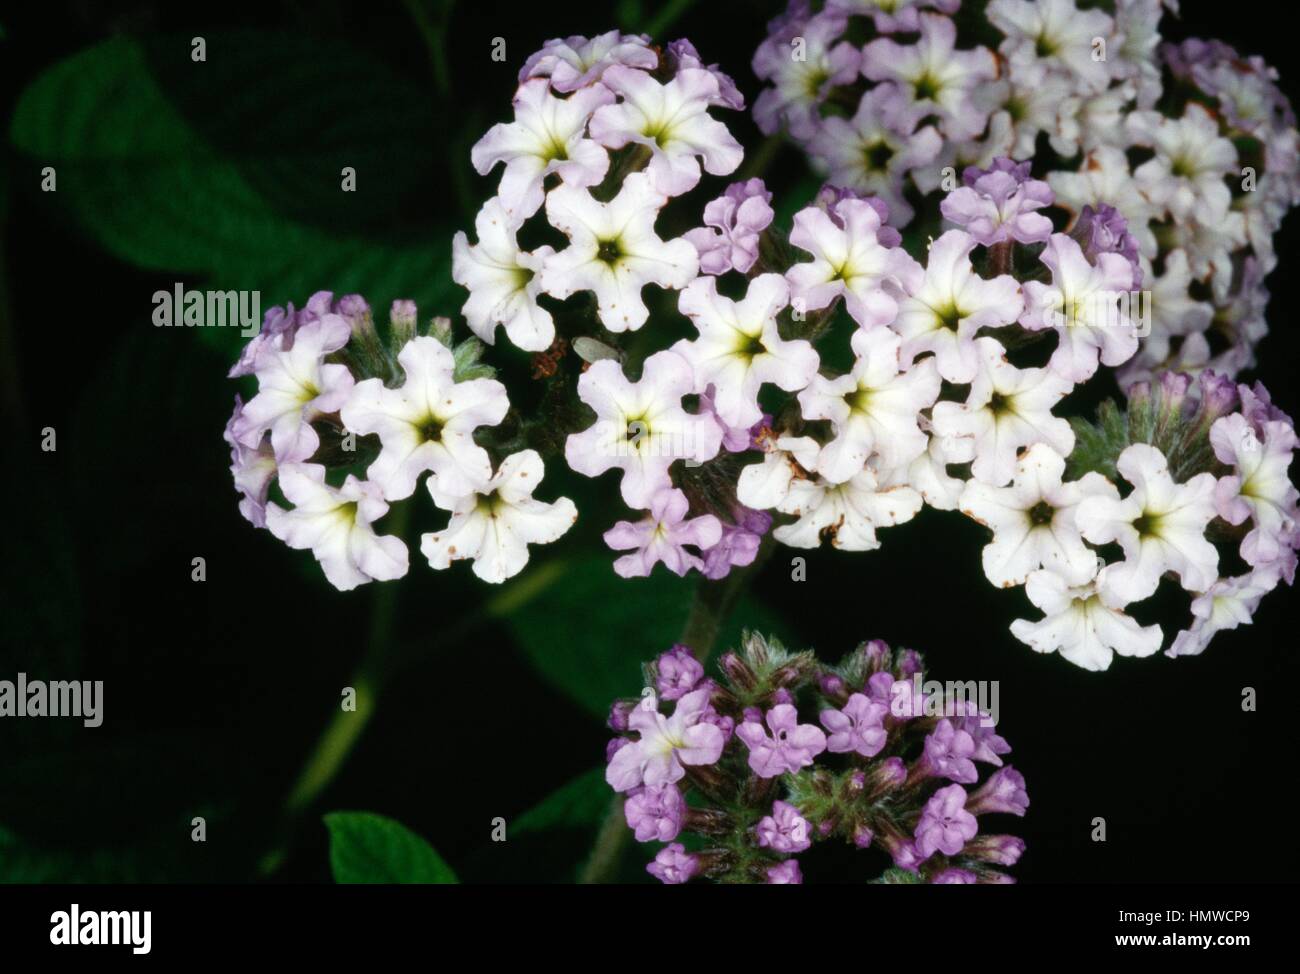 Heliotropium (Heliotropium peruvianum), Boraginaceae. Stock Photo